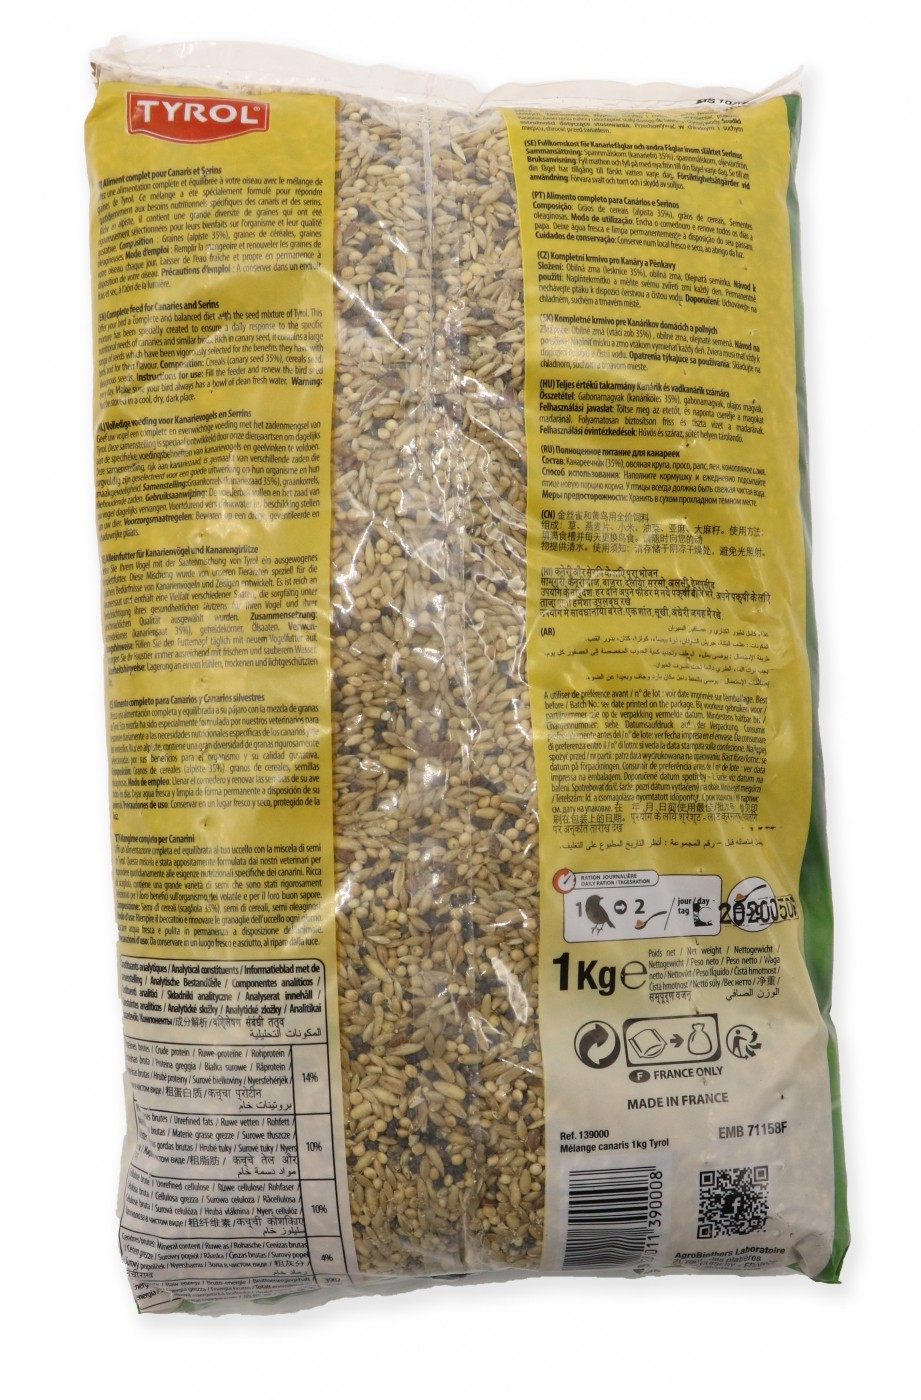 TYROL Mistura completa de sementes para Canários, rica em sementes de alpista 1 KG